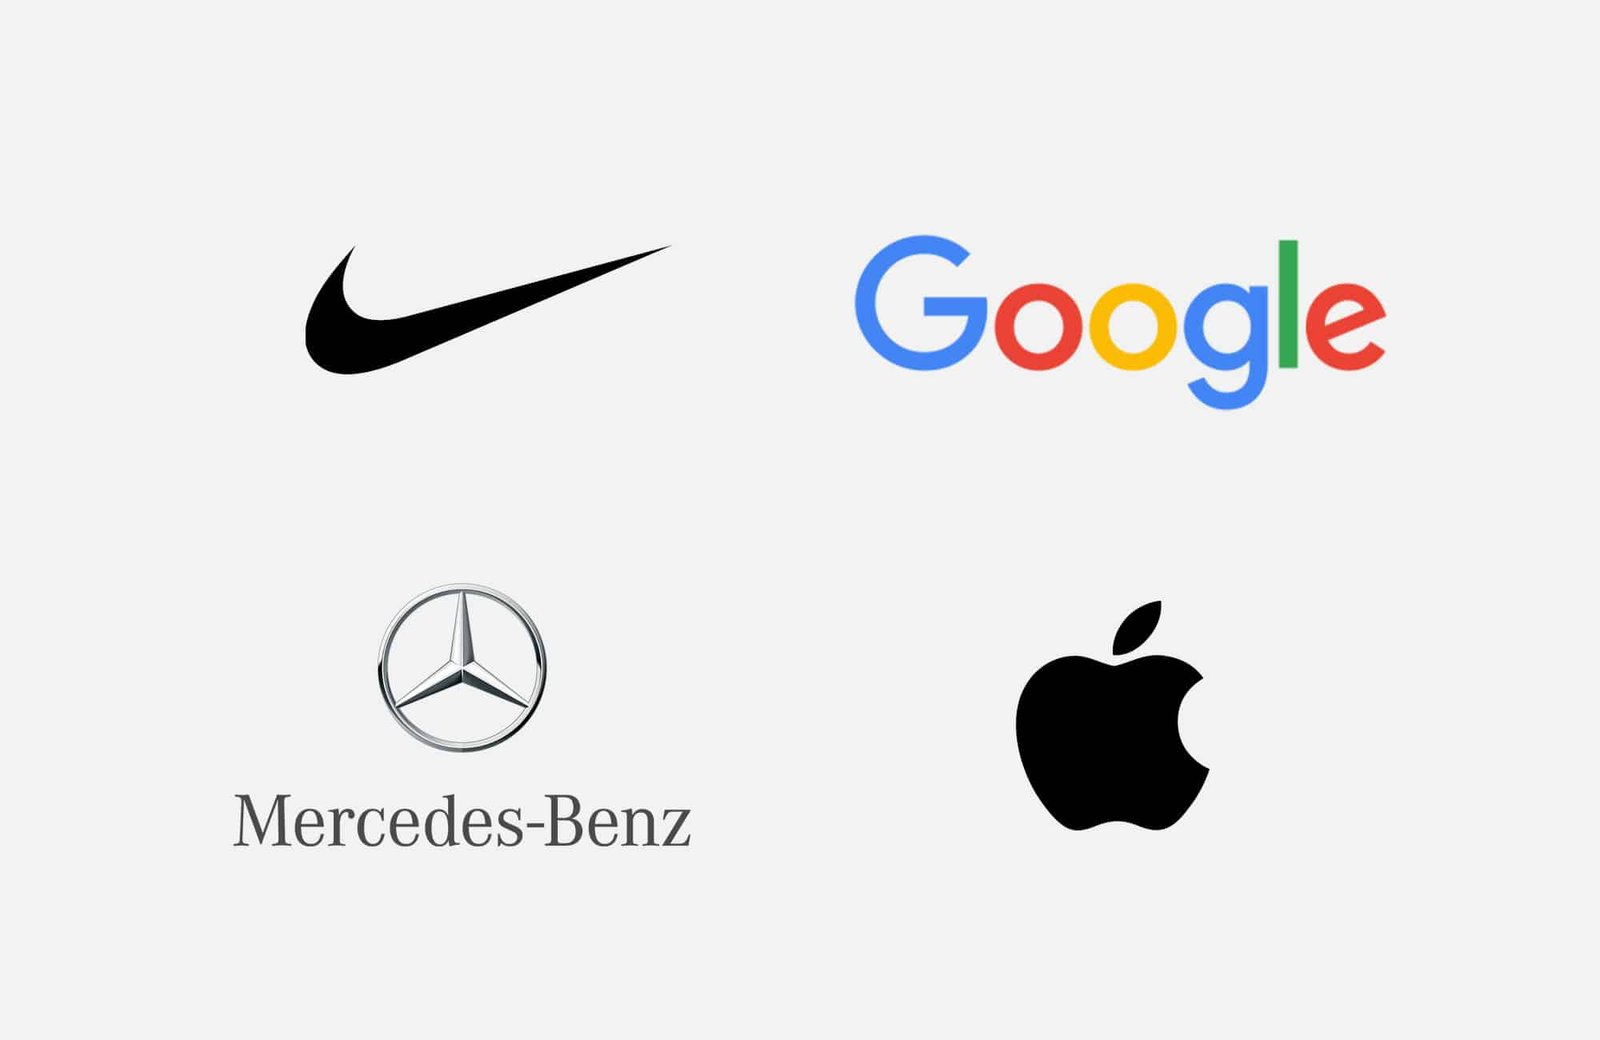 What makes good logos?